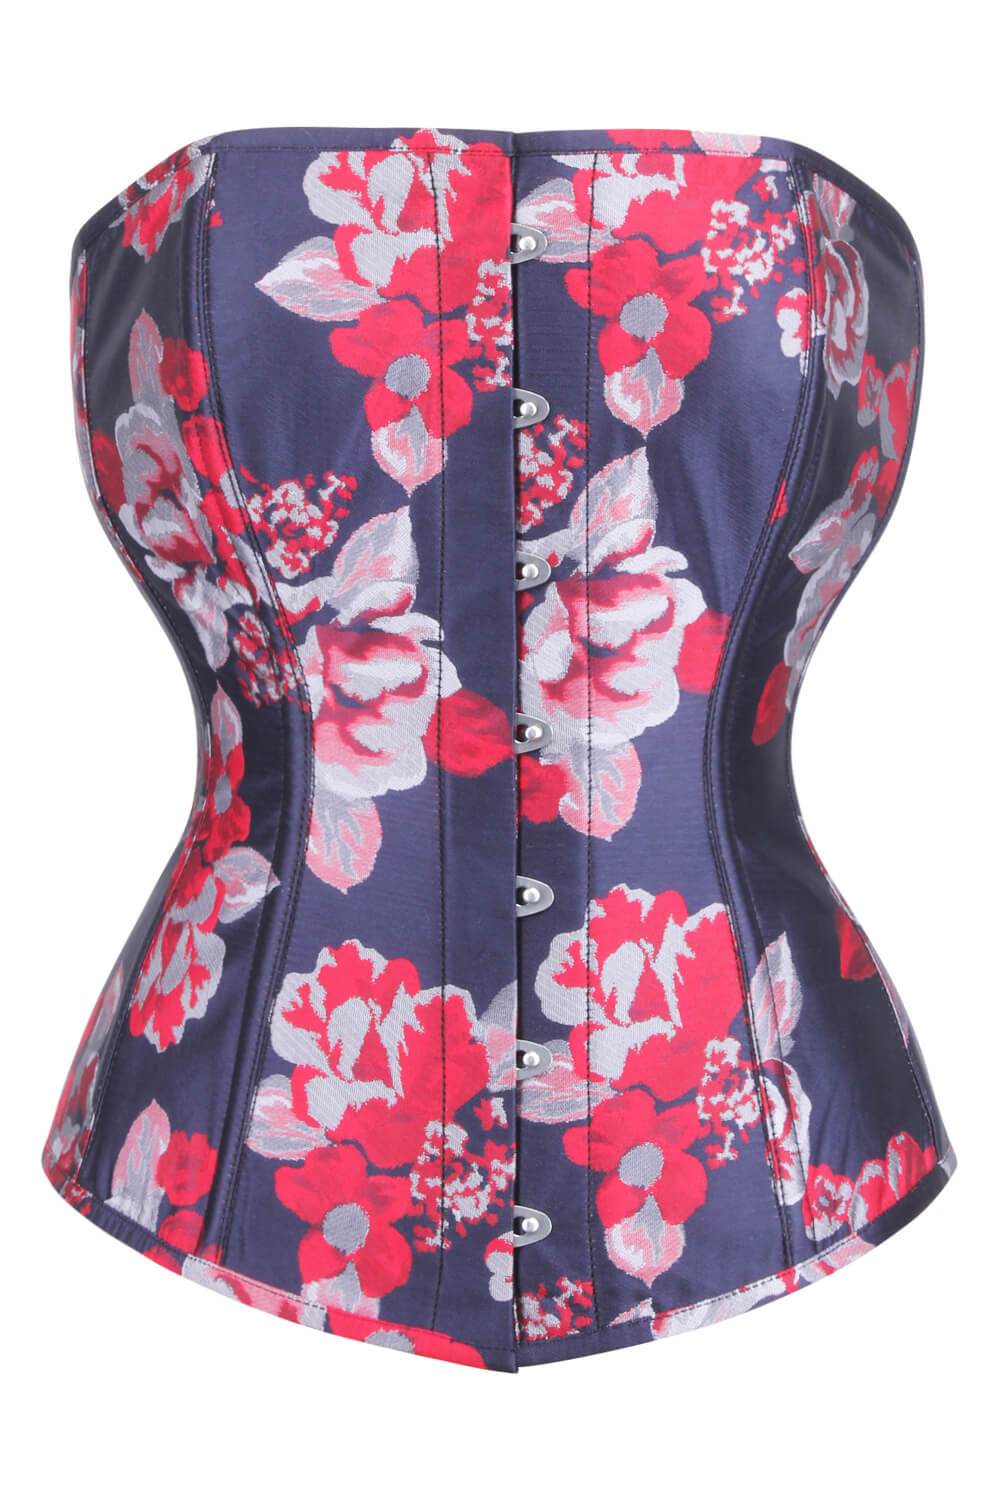 https://www.corsetdeal.com/cdn/shop/products/EL-269_F_Elyzza_London_Corset_Corsetdeal_Corsets-uk_Orchard-Corset_Bespoke_Corset.jpg?v=1547880938